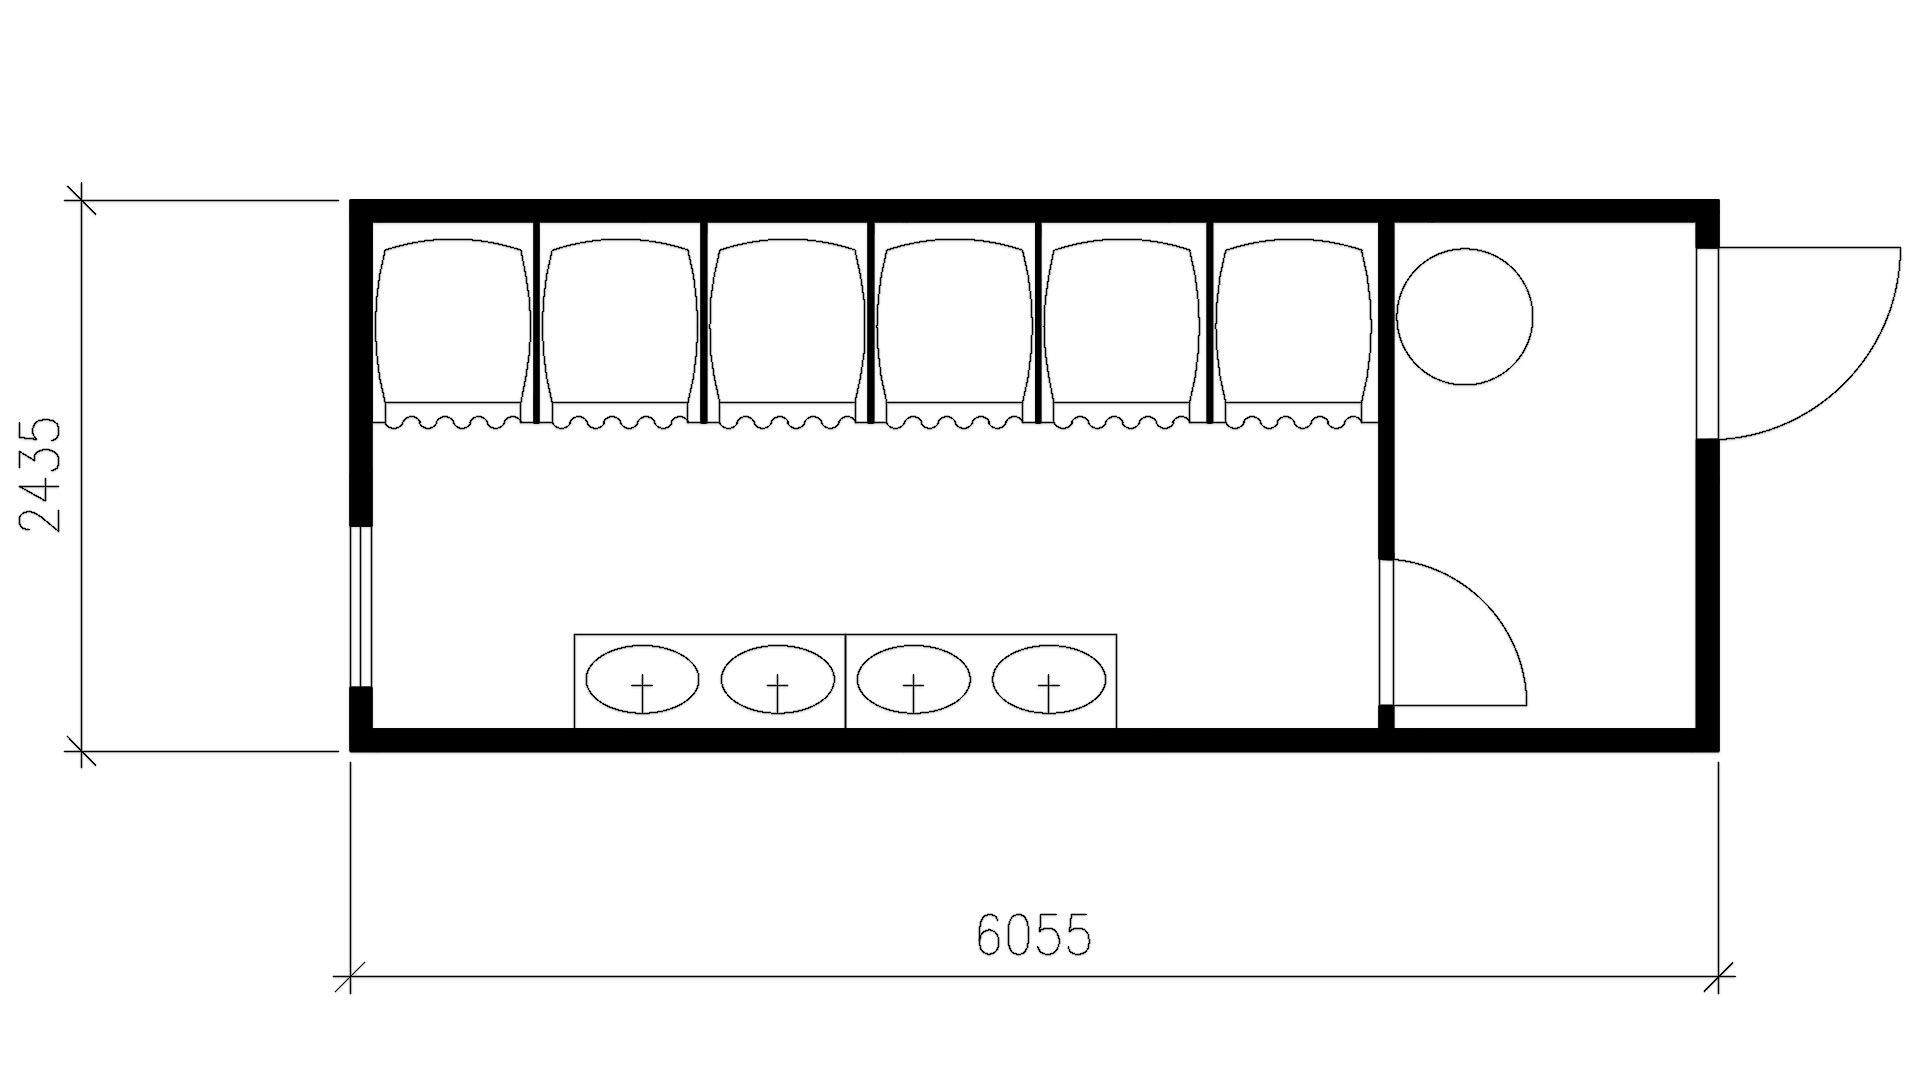 Планировка контейнера душевой с тамбуром (6 душевых кабин, 4 умывальника, 1 бойлер) 20-футов, размеры: 6055/2435/2750 (Д/Ш/В) в мм